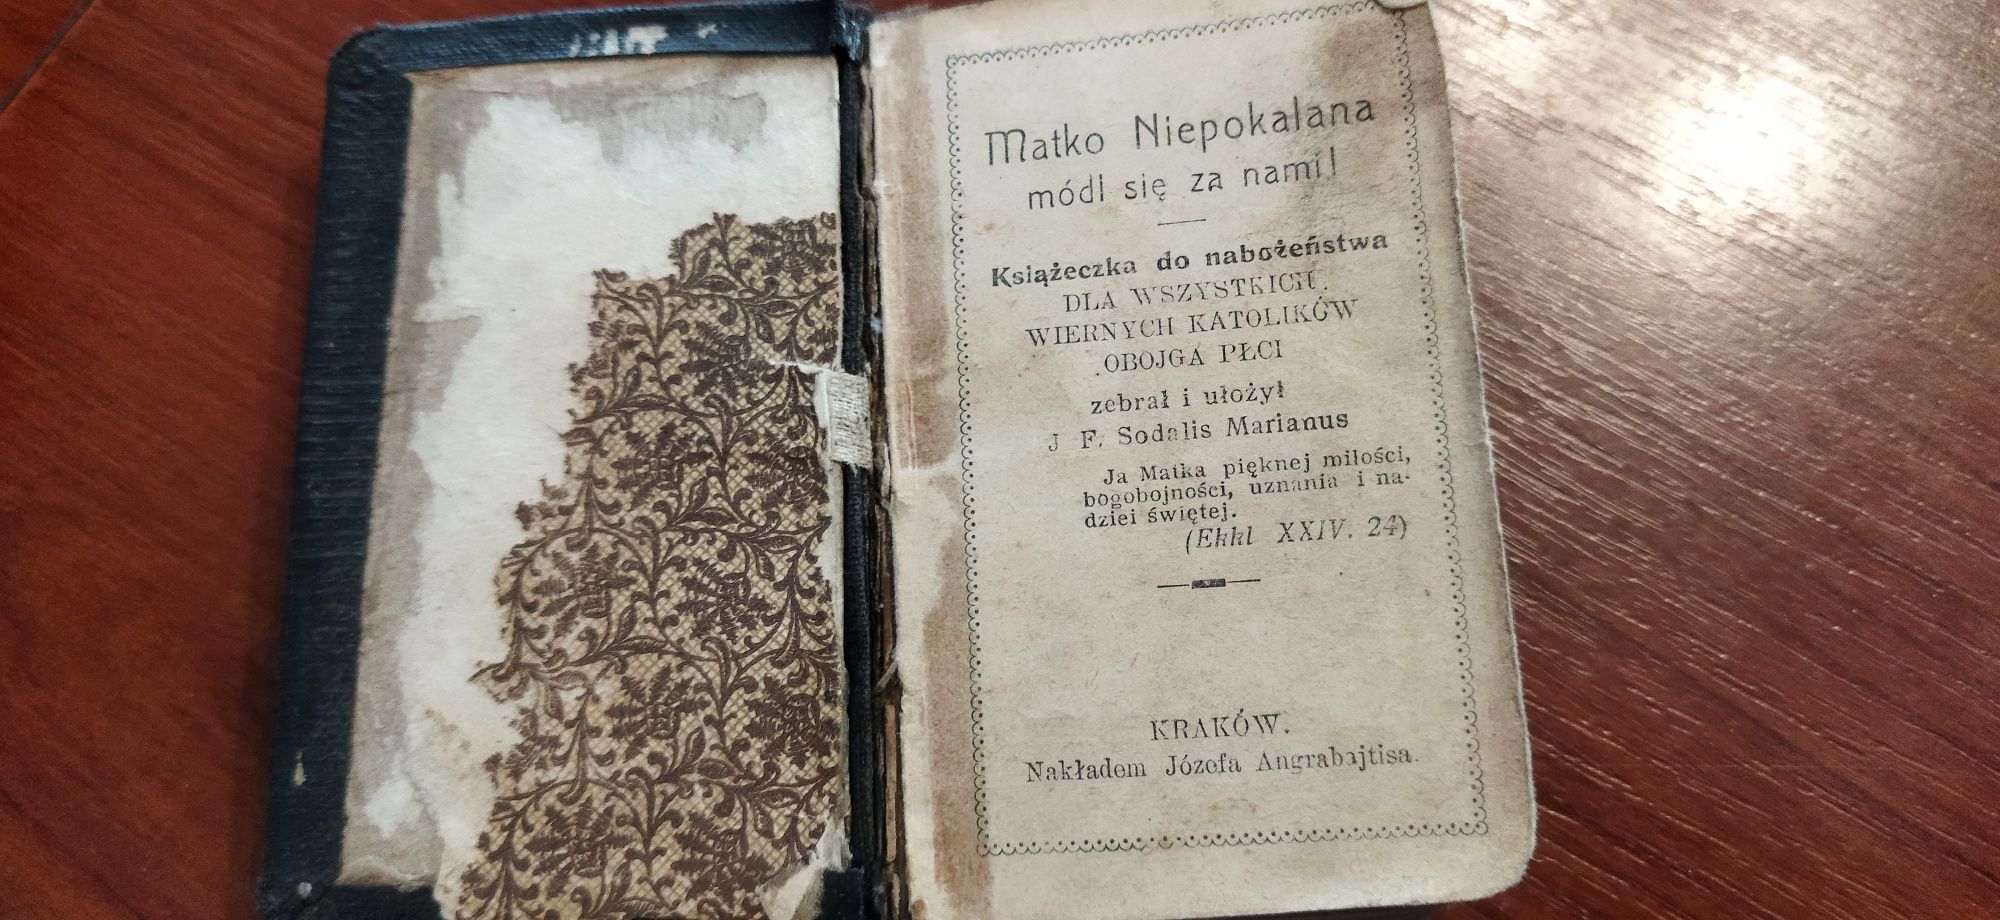 Książka do nabożeństwa 1912 r.